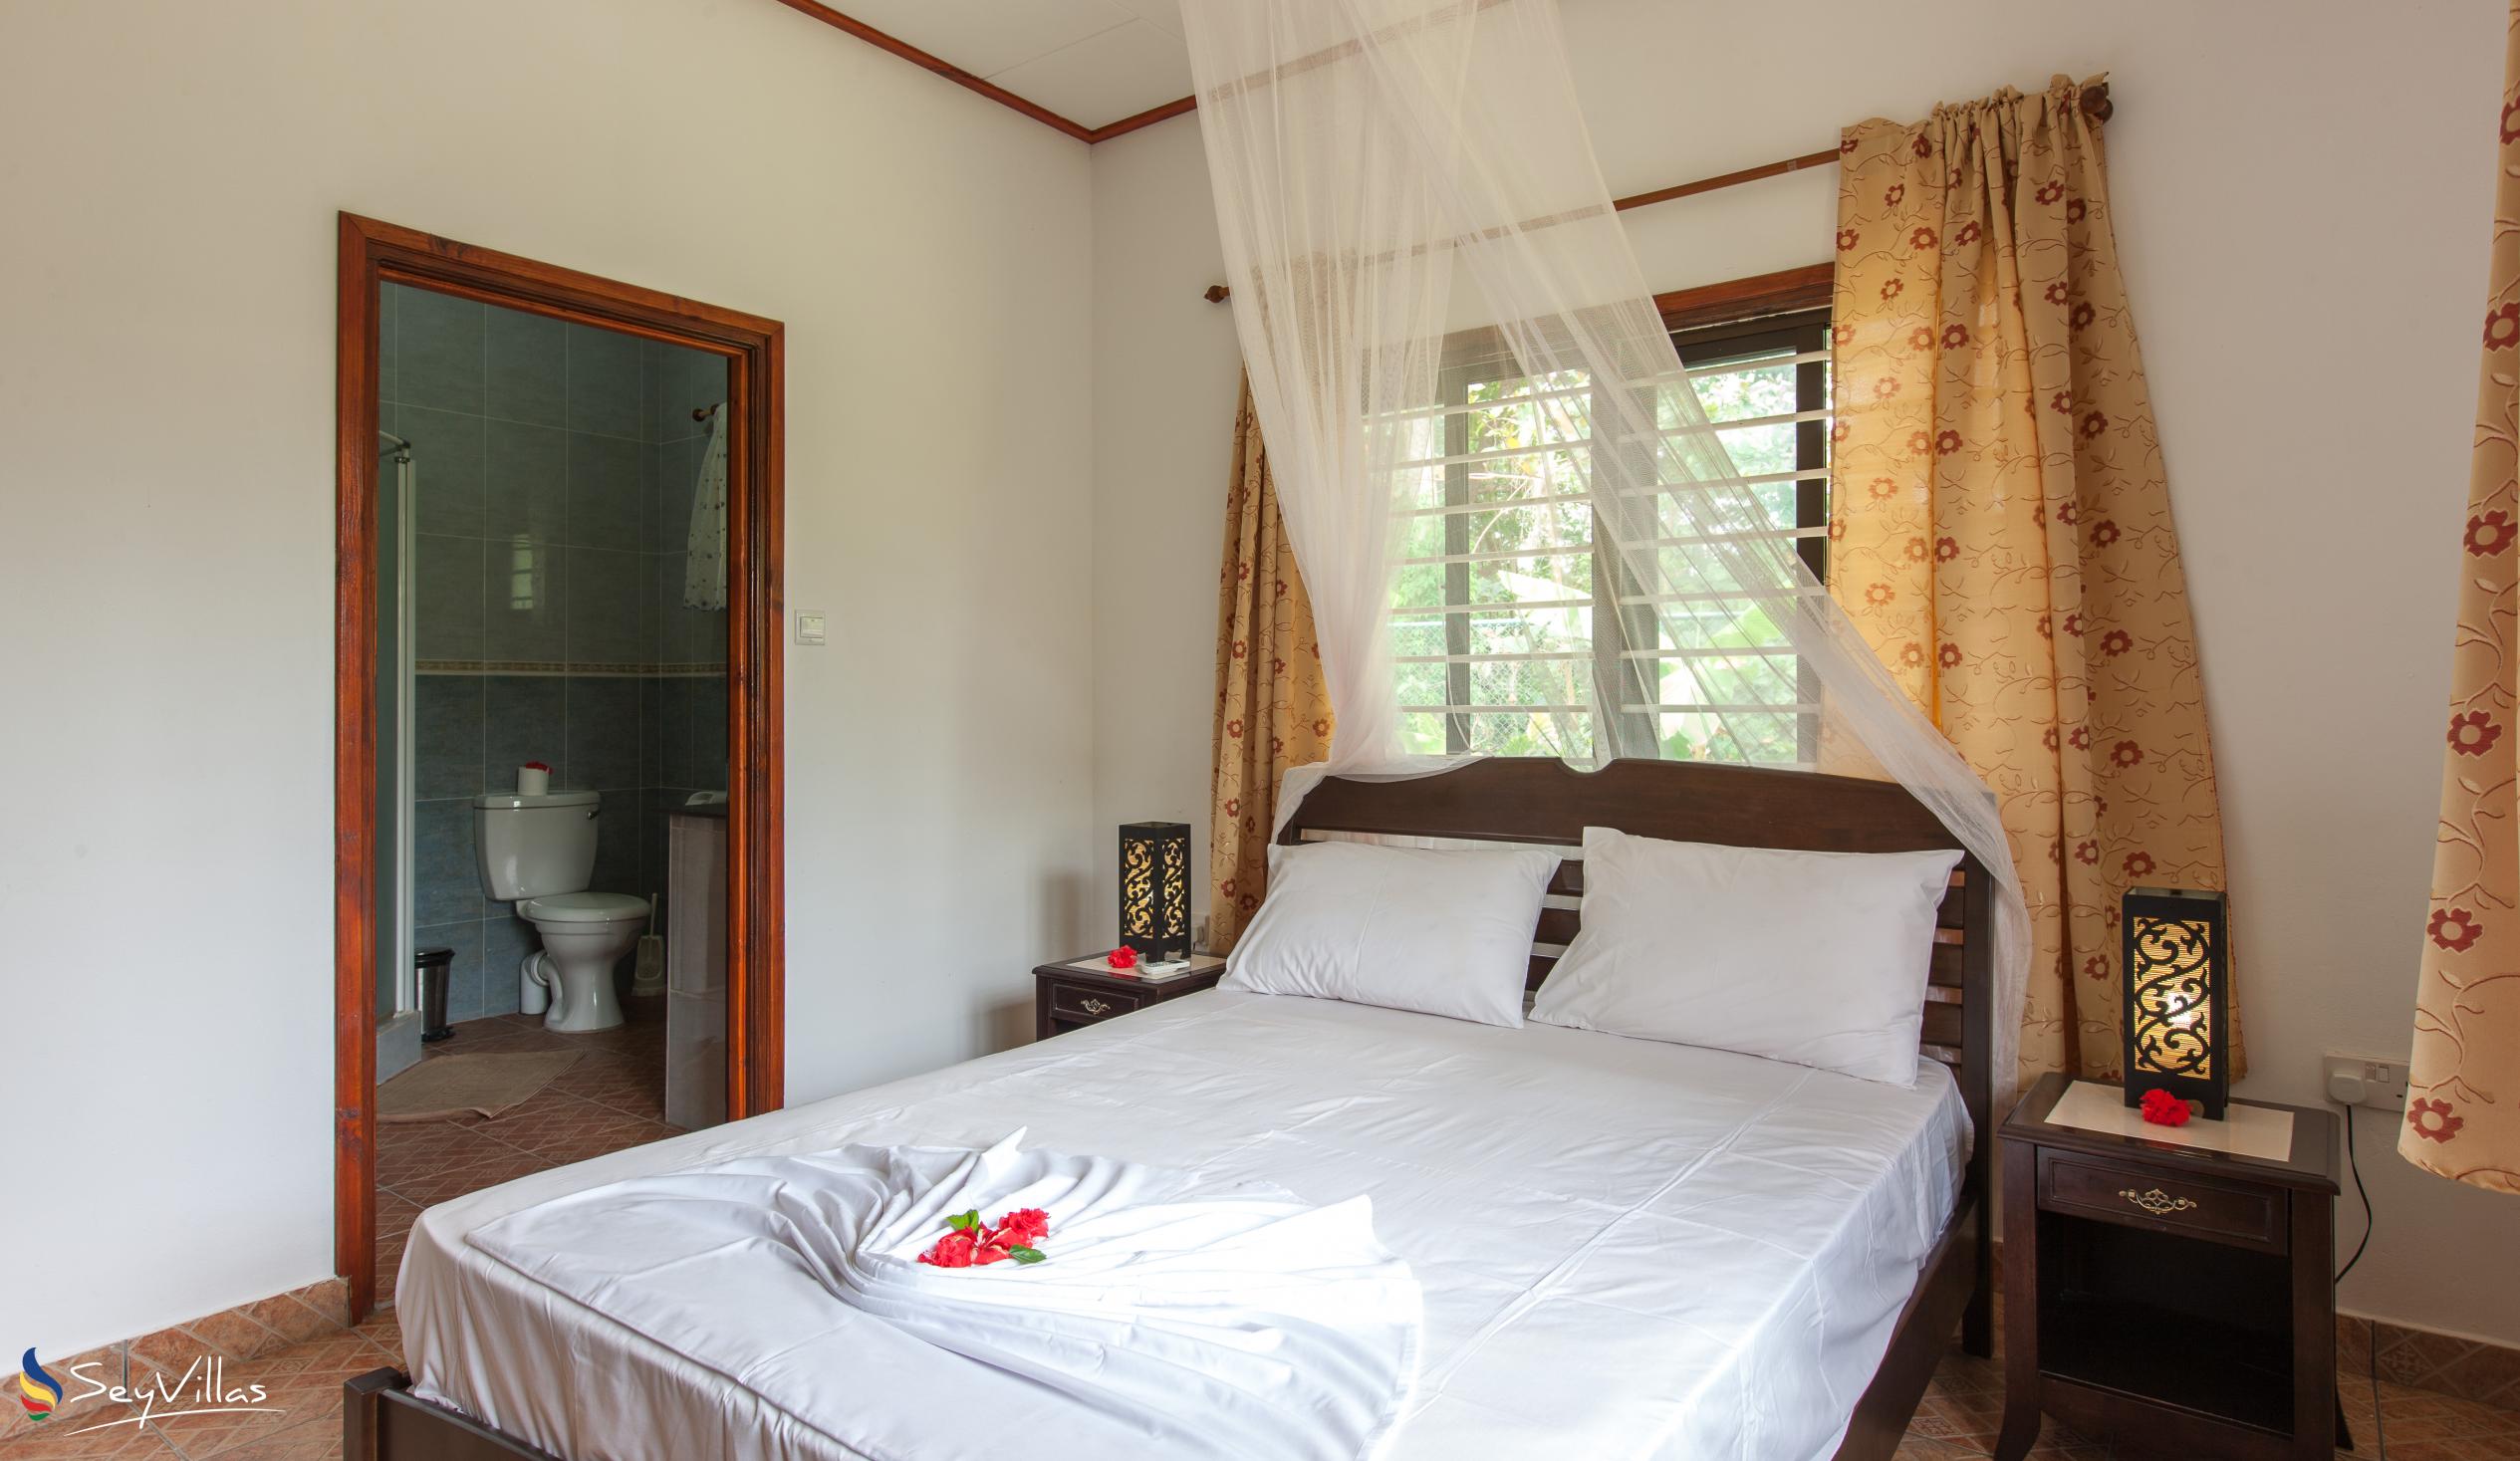 Foto 43: Zerof Self Catering  Apartments - Bungalow à 2 chambres - La Digue (Seychelles)